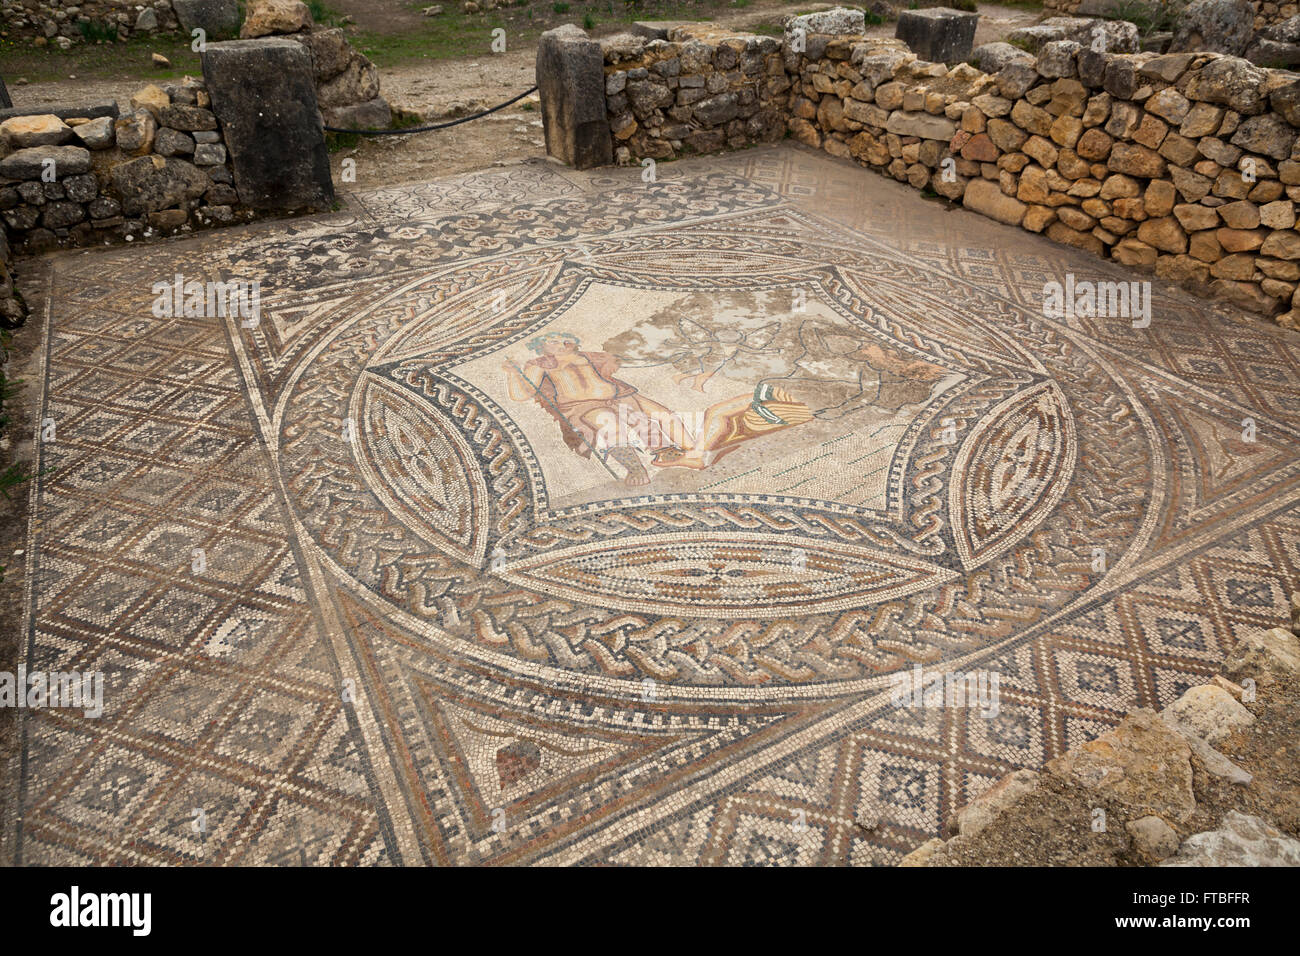 Volubilis, Site du patrimoine mondial de l'UNESCO, le Maroc - vestiges romains et mosaïques. La rencontre de la mosaïque de Bacchus Ariane endormie Banque D'Images